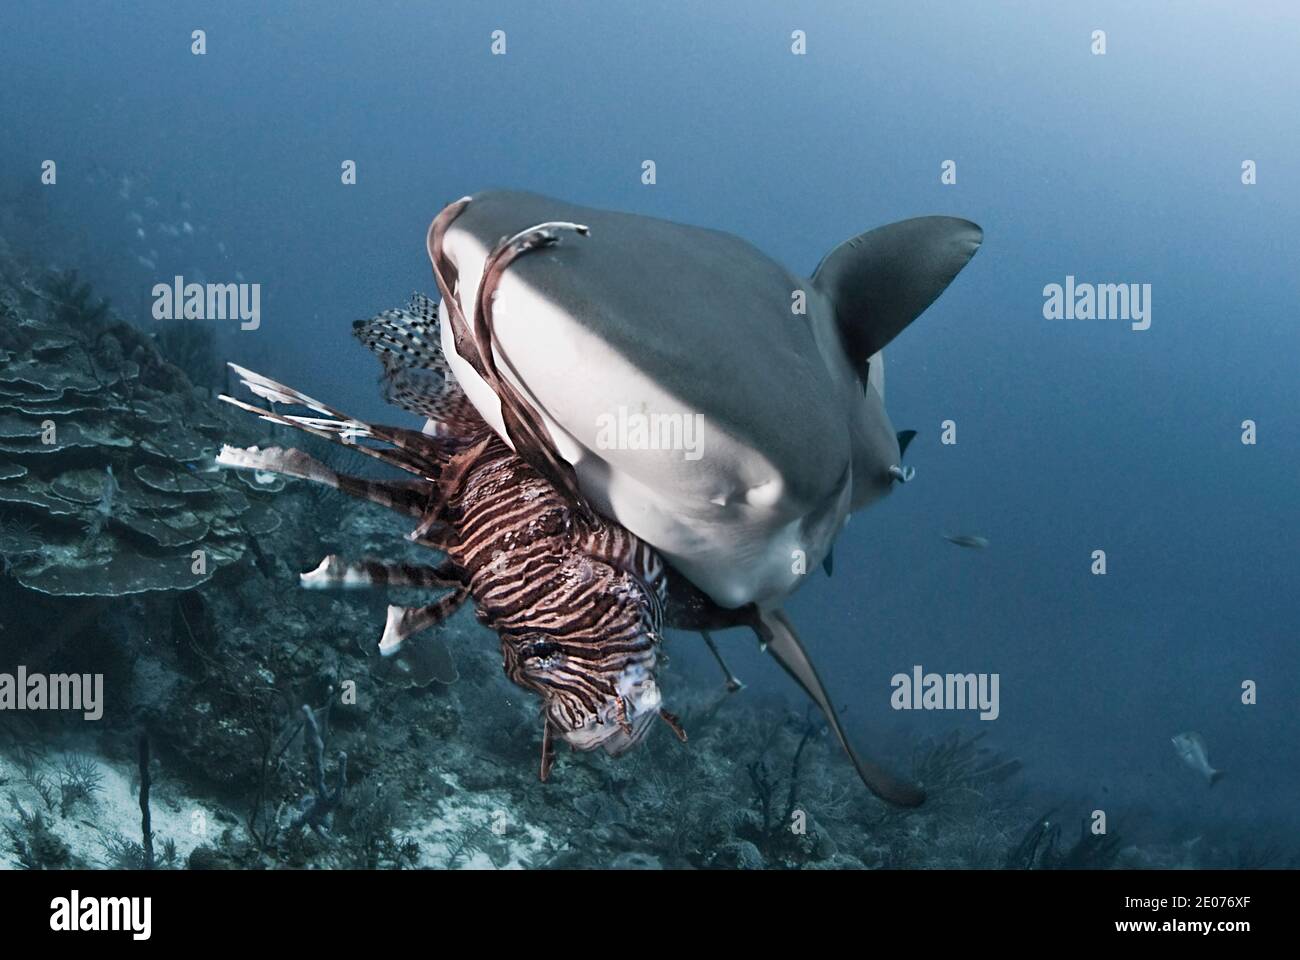 Nahaufnahme des karibischen Riffhais (Carcharhinus perezi) Essen eines roten Löwenfisches (Pterois volitans) Stockfoto